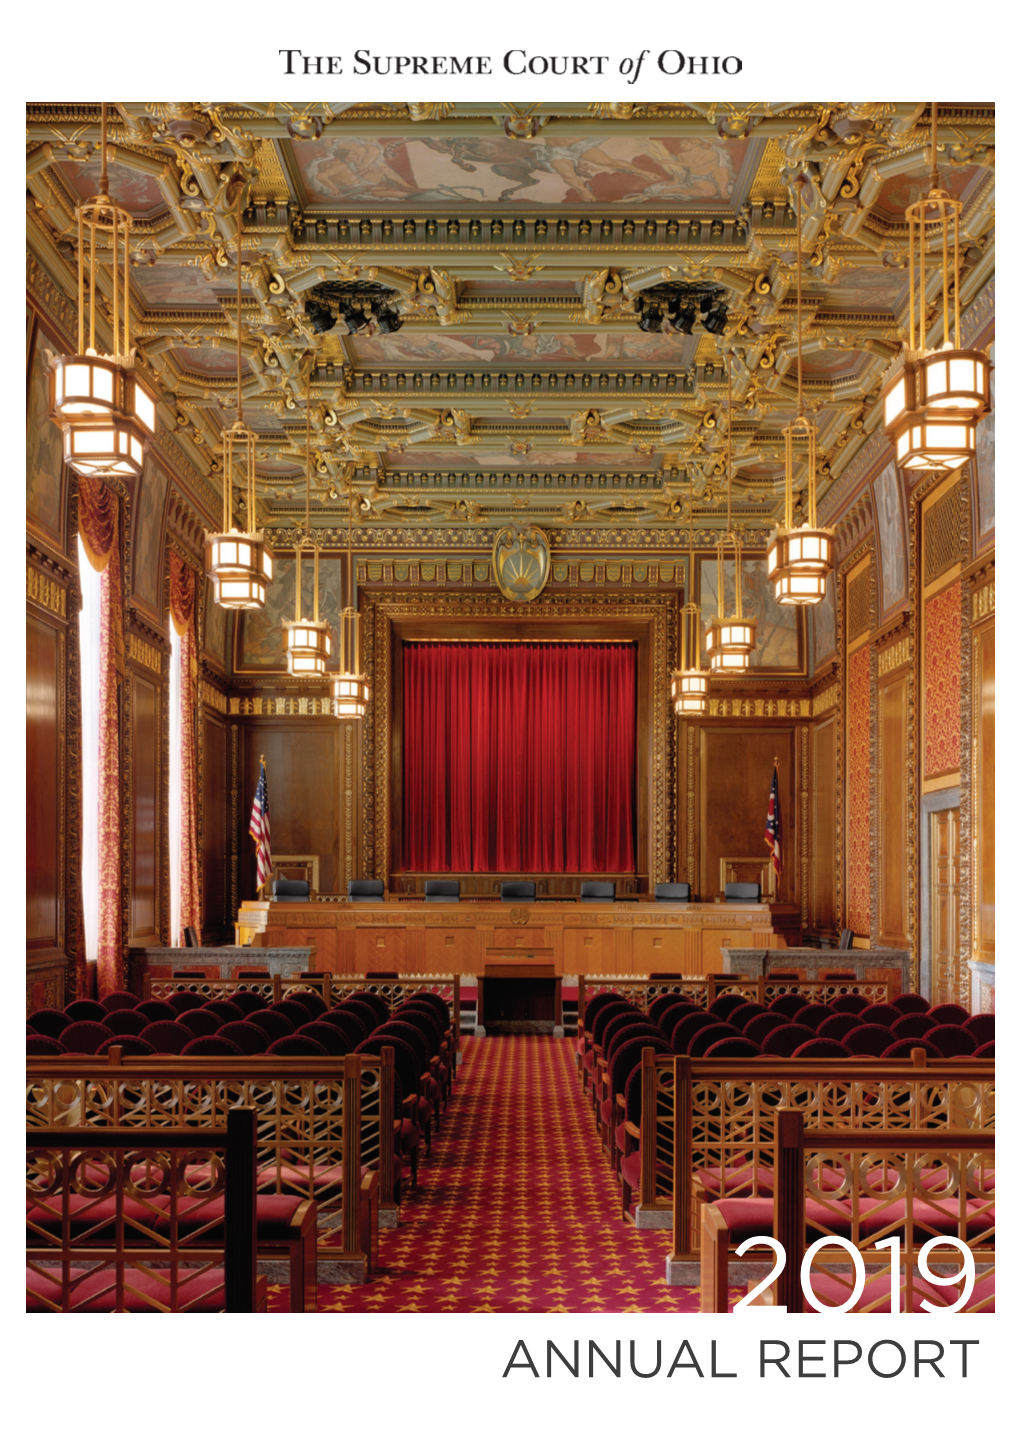 Supreme Court of Ohio 2019 Annual Report